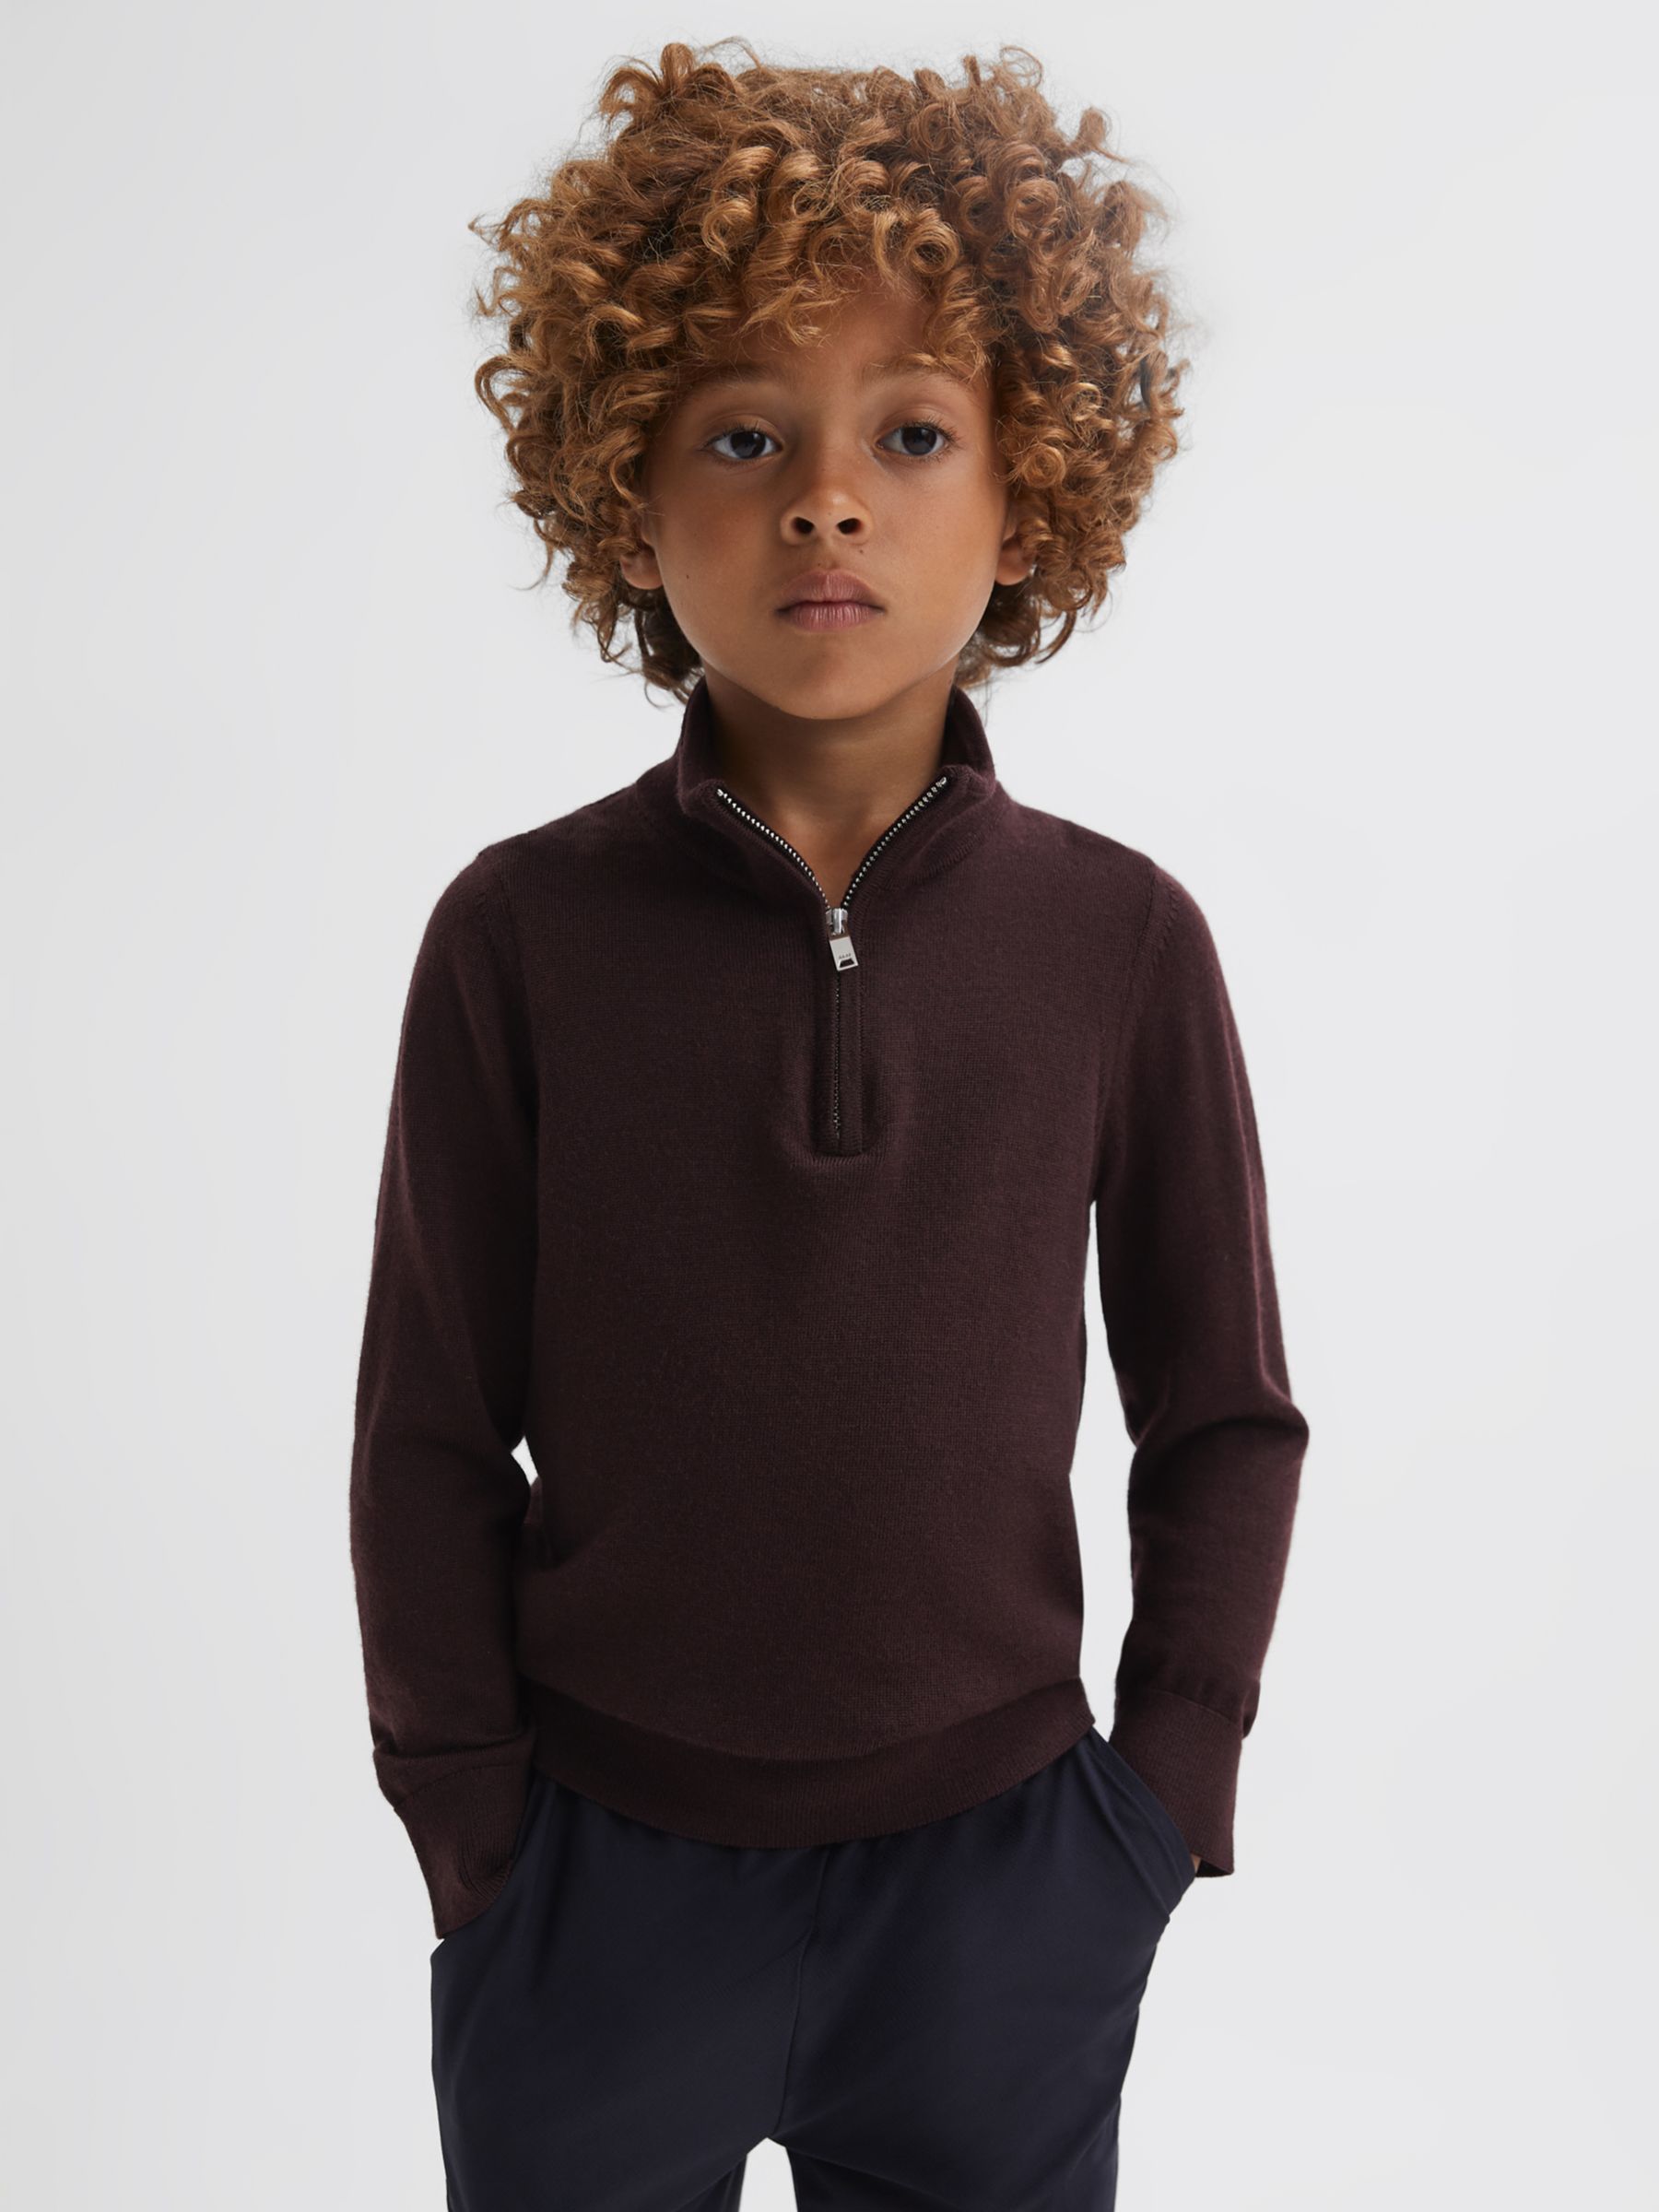 Детский джемпер Blackhall из мериносовой шерсти с молнией до половины Reiss, бордо